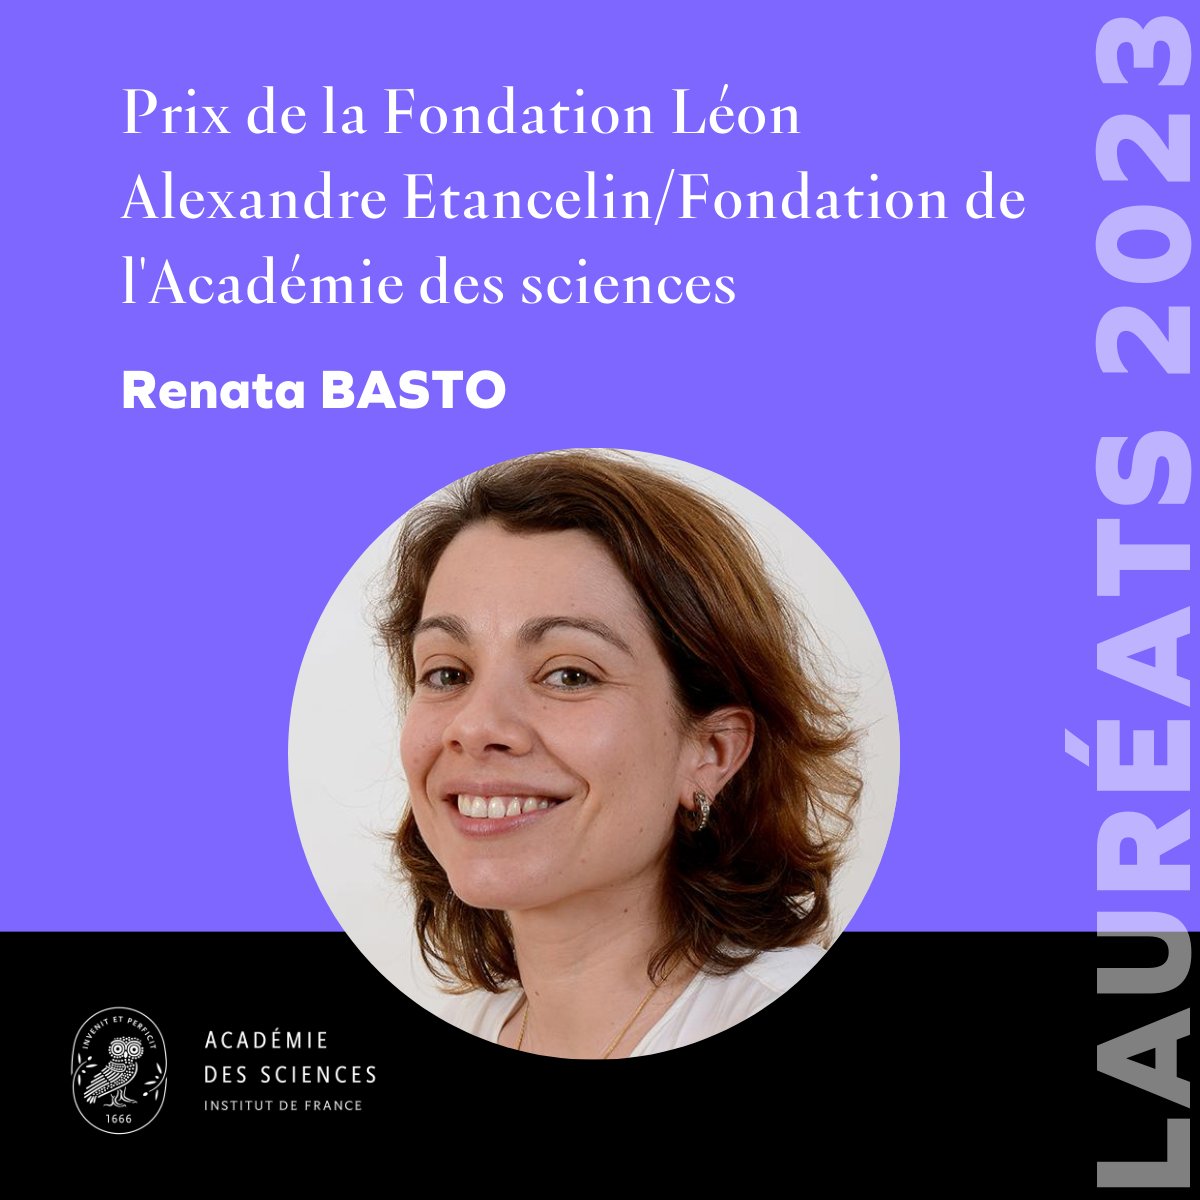 🏆 Félicitations à la Dr @BastoRenata, directrice de recherche au @CNRS et cheffe de l'équipe de recherche @basto_lab à l'@institut_curie, lauréate du Prix de la Fondation Léon Alexandre Etancelin / Fondation de l'@Acadciences 👏

#prixAcadSciences